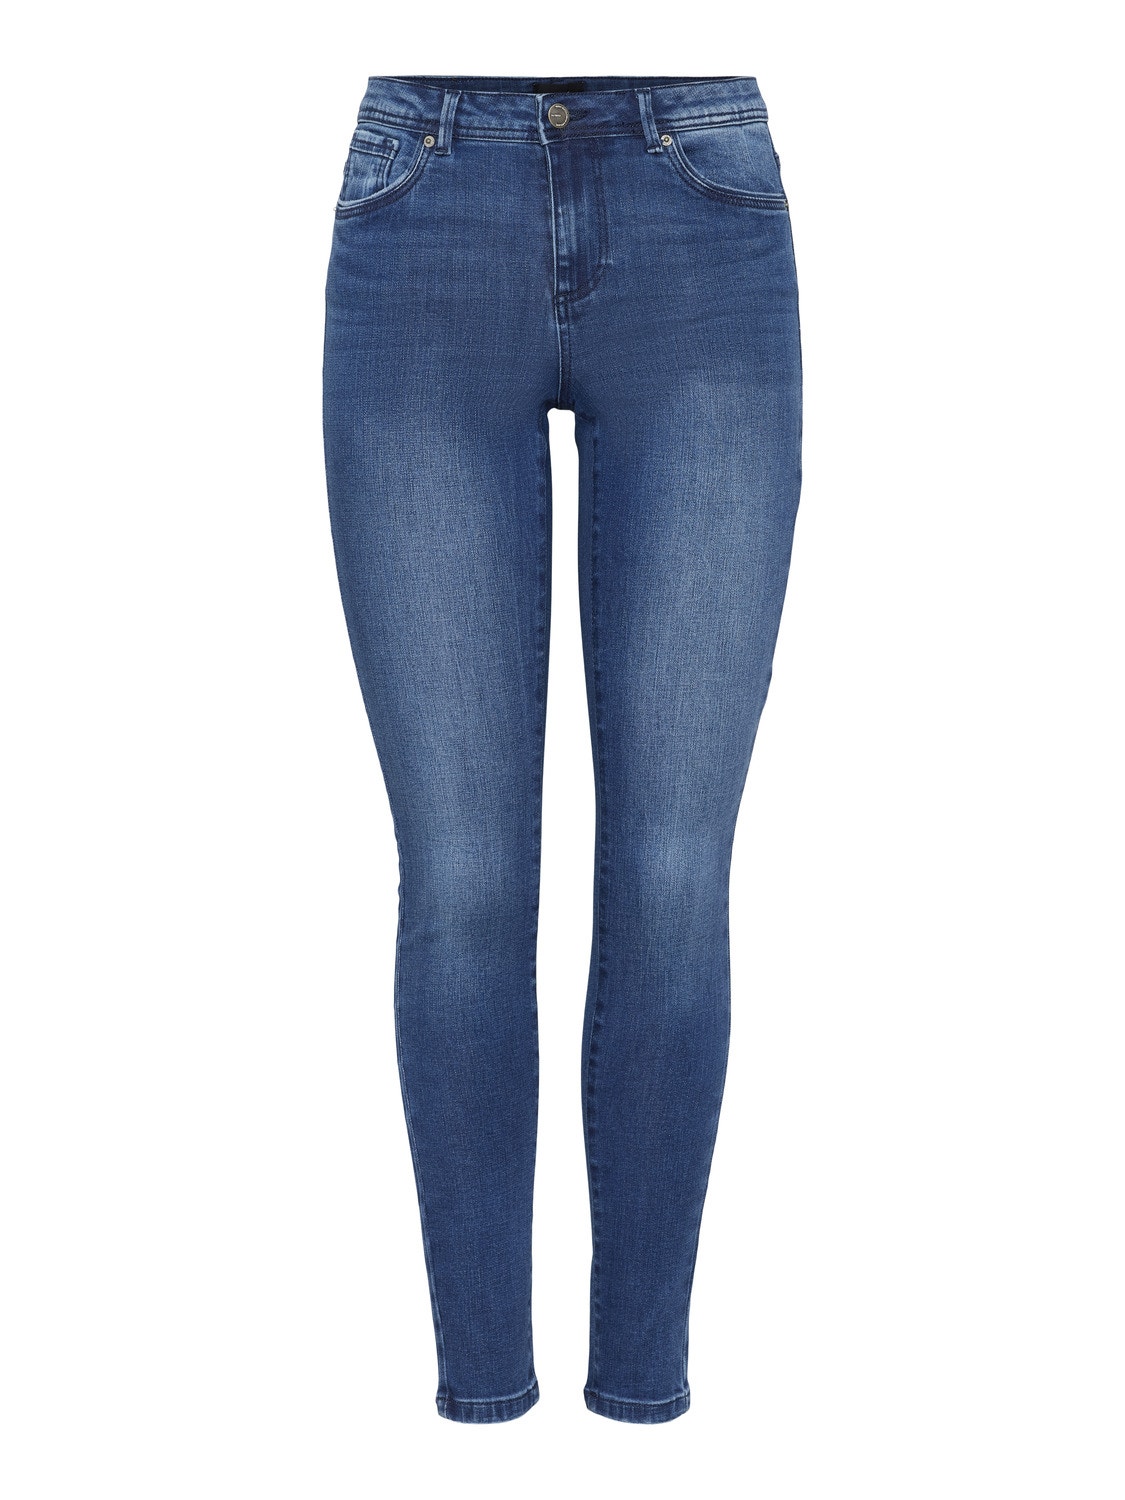 Vero Moda VMTANYA Skinny Fit Jeans -Dark Blue Denim - 10284172